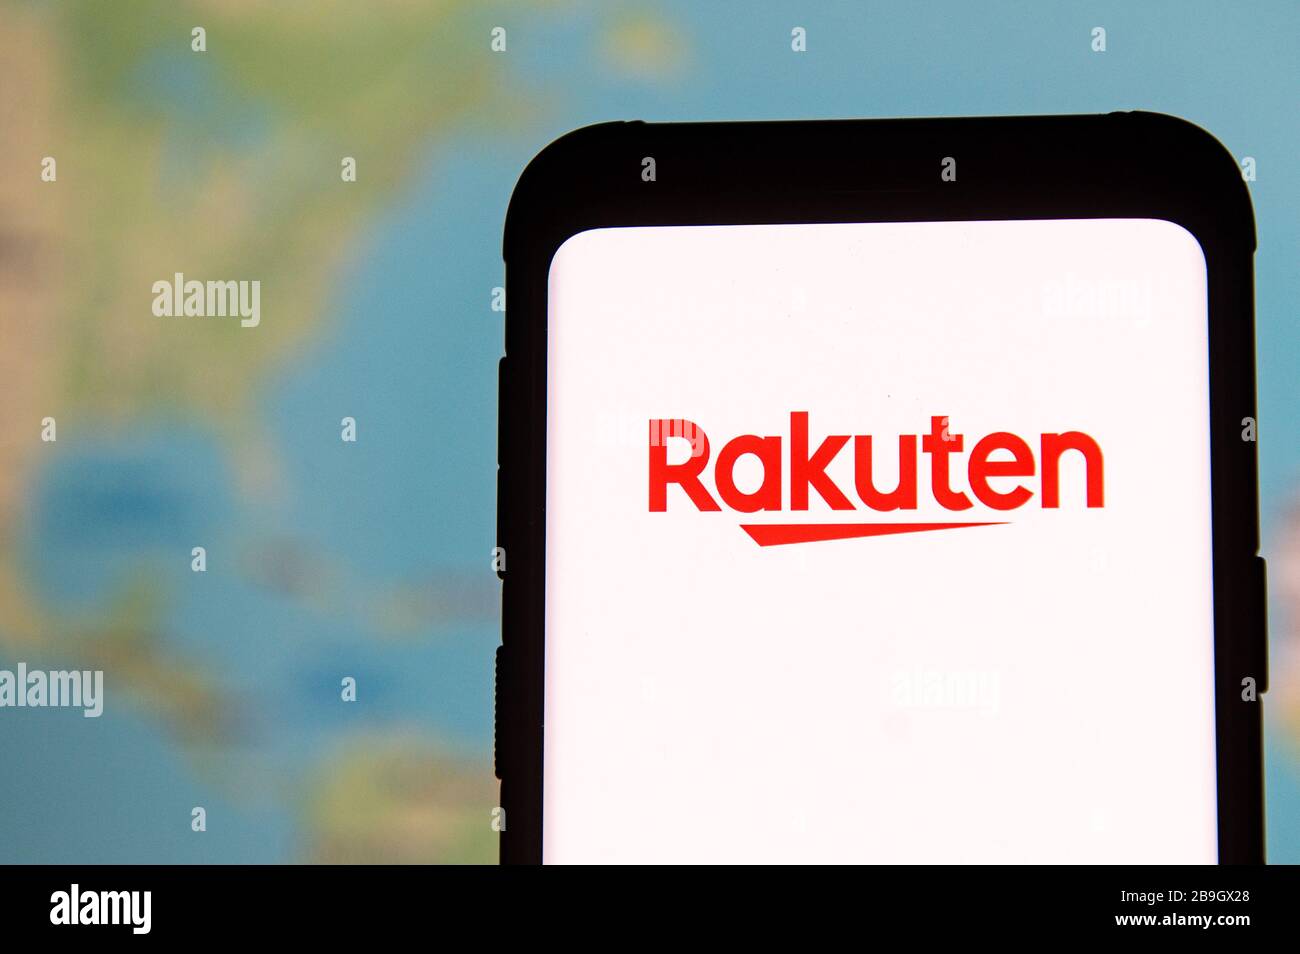 23 marzo 2020, Polonia: In questa illustrazione fotografica un logo Rakuten visto esposto su uno smartphone. (Immagine di credito: © Mateusz Slodkowski/SOPA Images via ZUMA Wire) Foto Stock